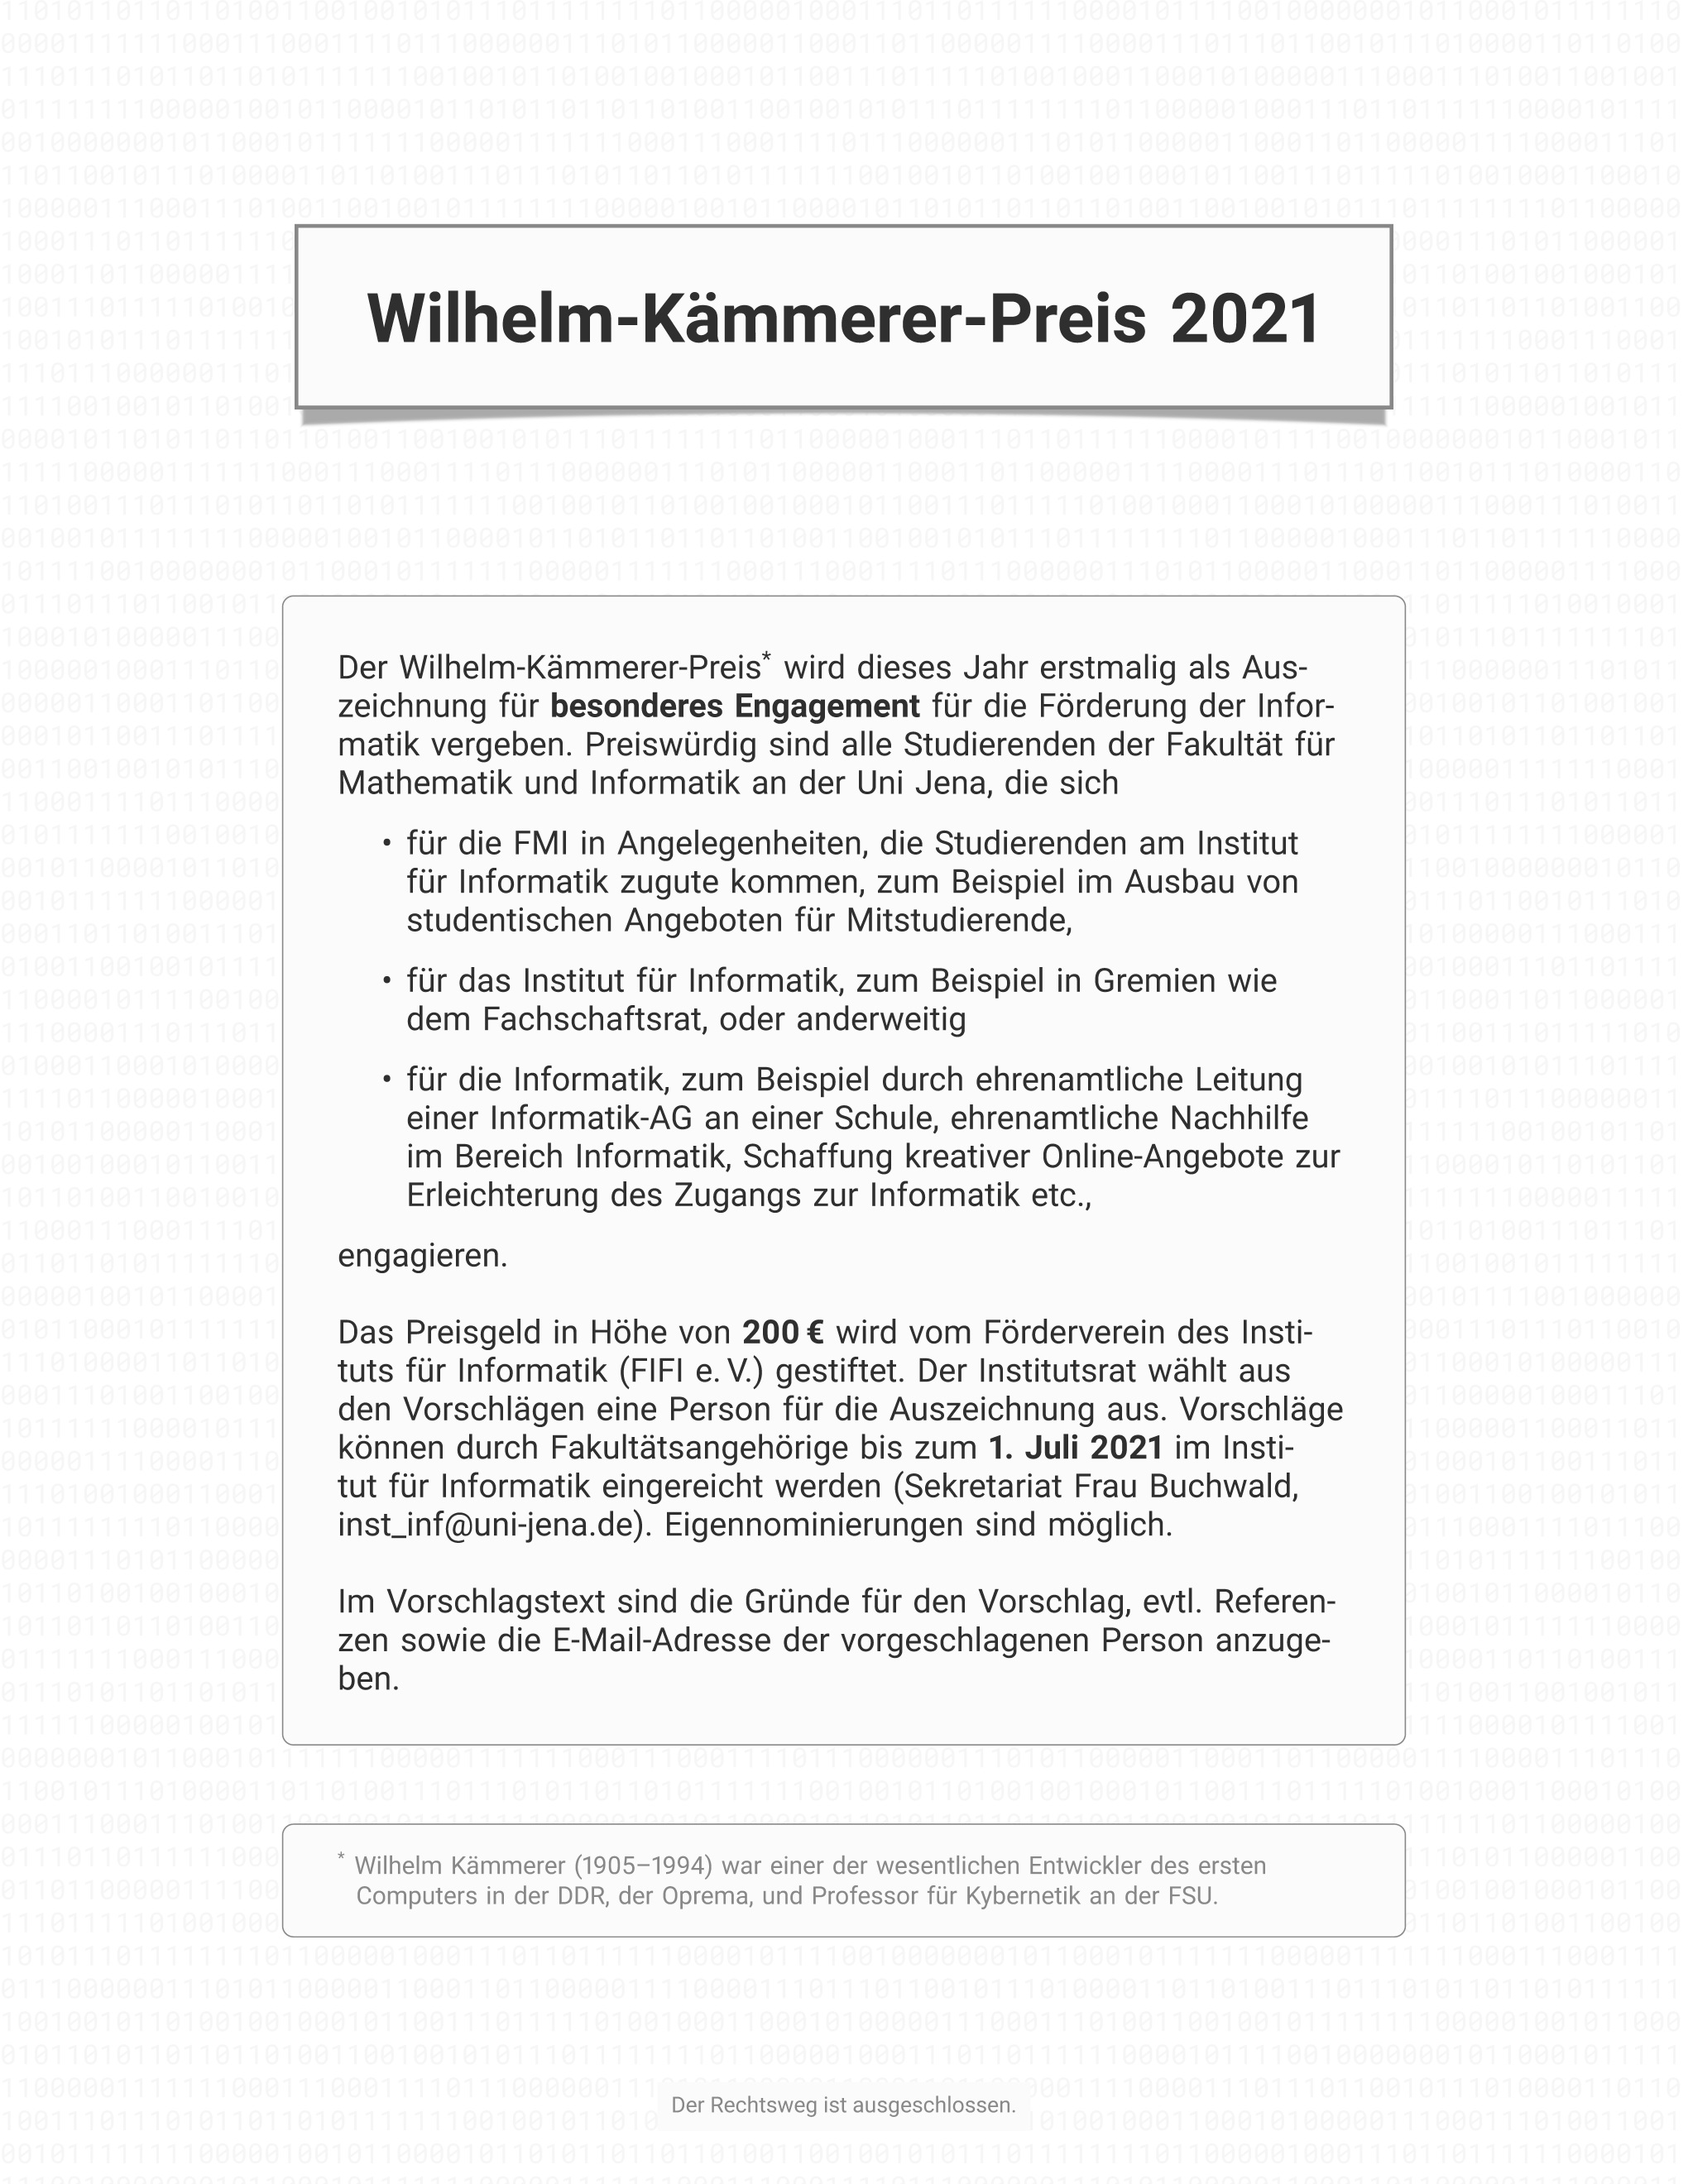 Plakat Wilhelm-Kämmerer-Preis